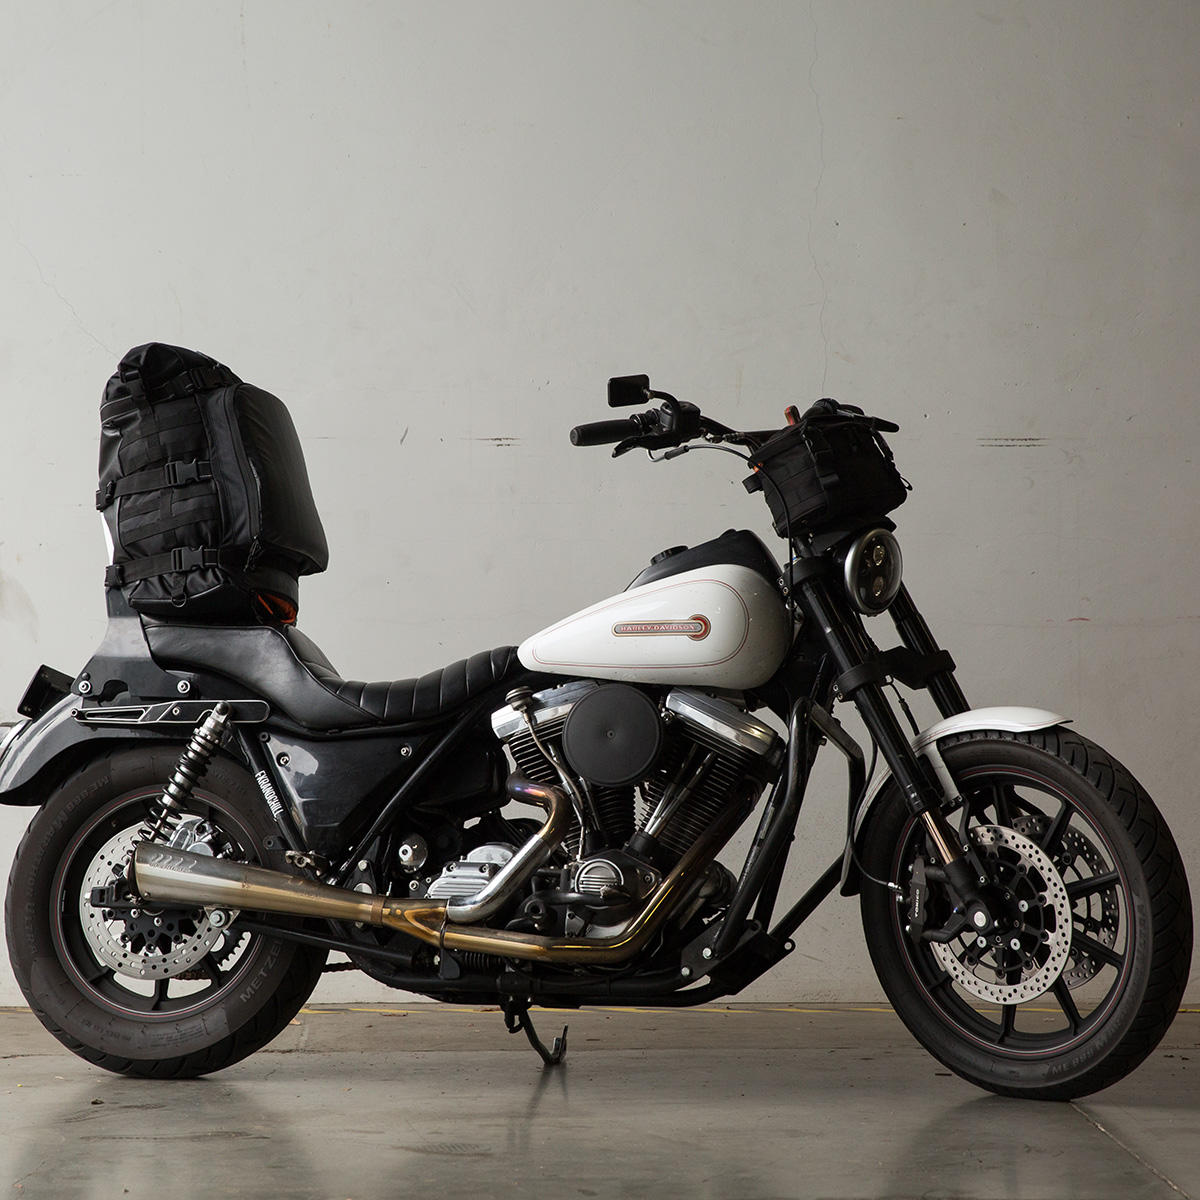 BILTWELL EXFIL-80 G1 Motorcycle Bag - Black